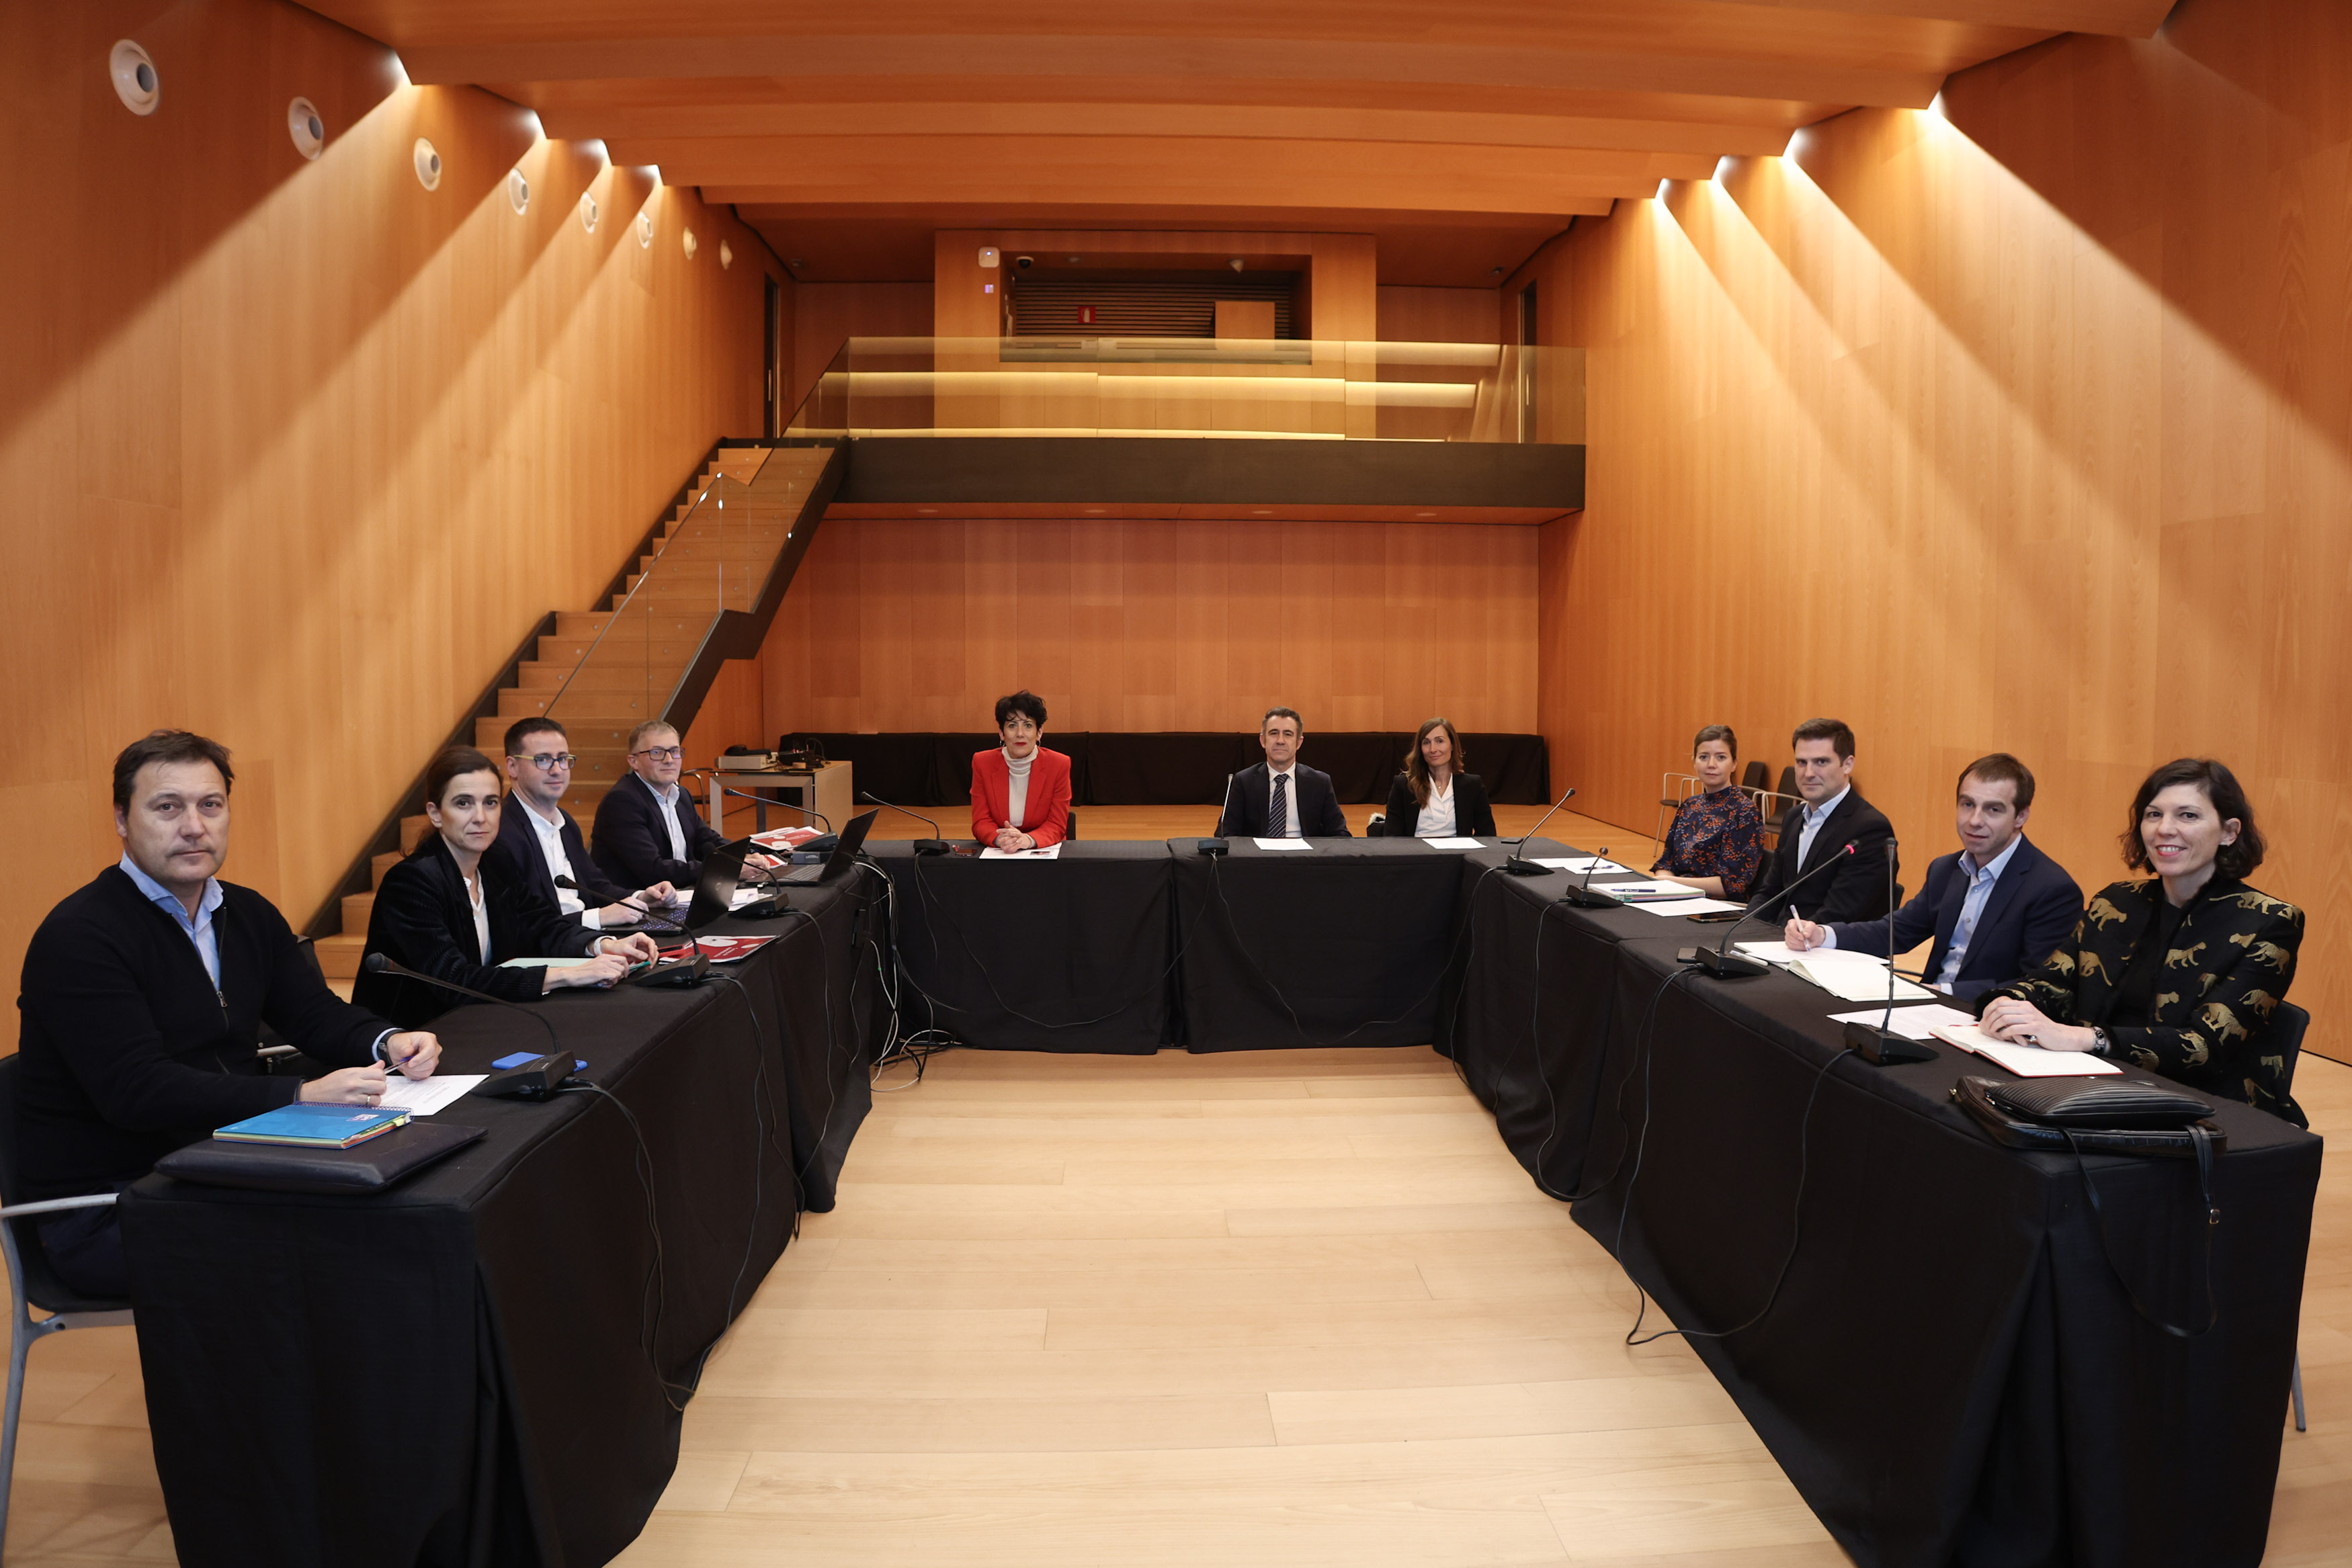 Fotografía frontal de una mesa dispuesta en U, en la que se ve a 11 personas sentadas mirando a cámara en una sala de reuniones